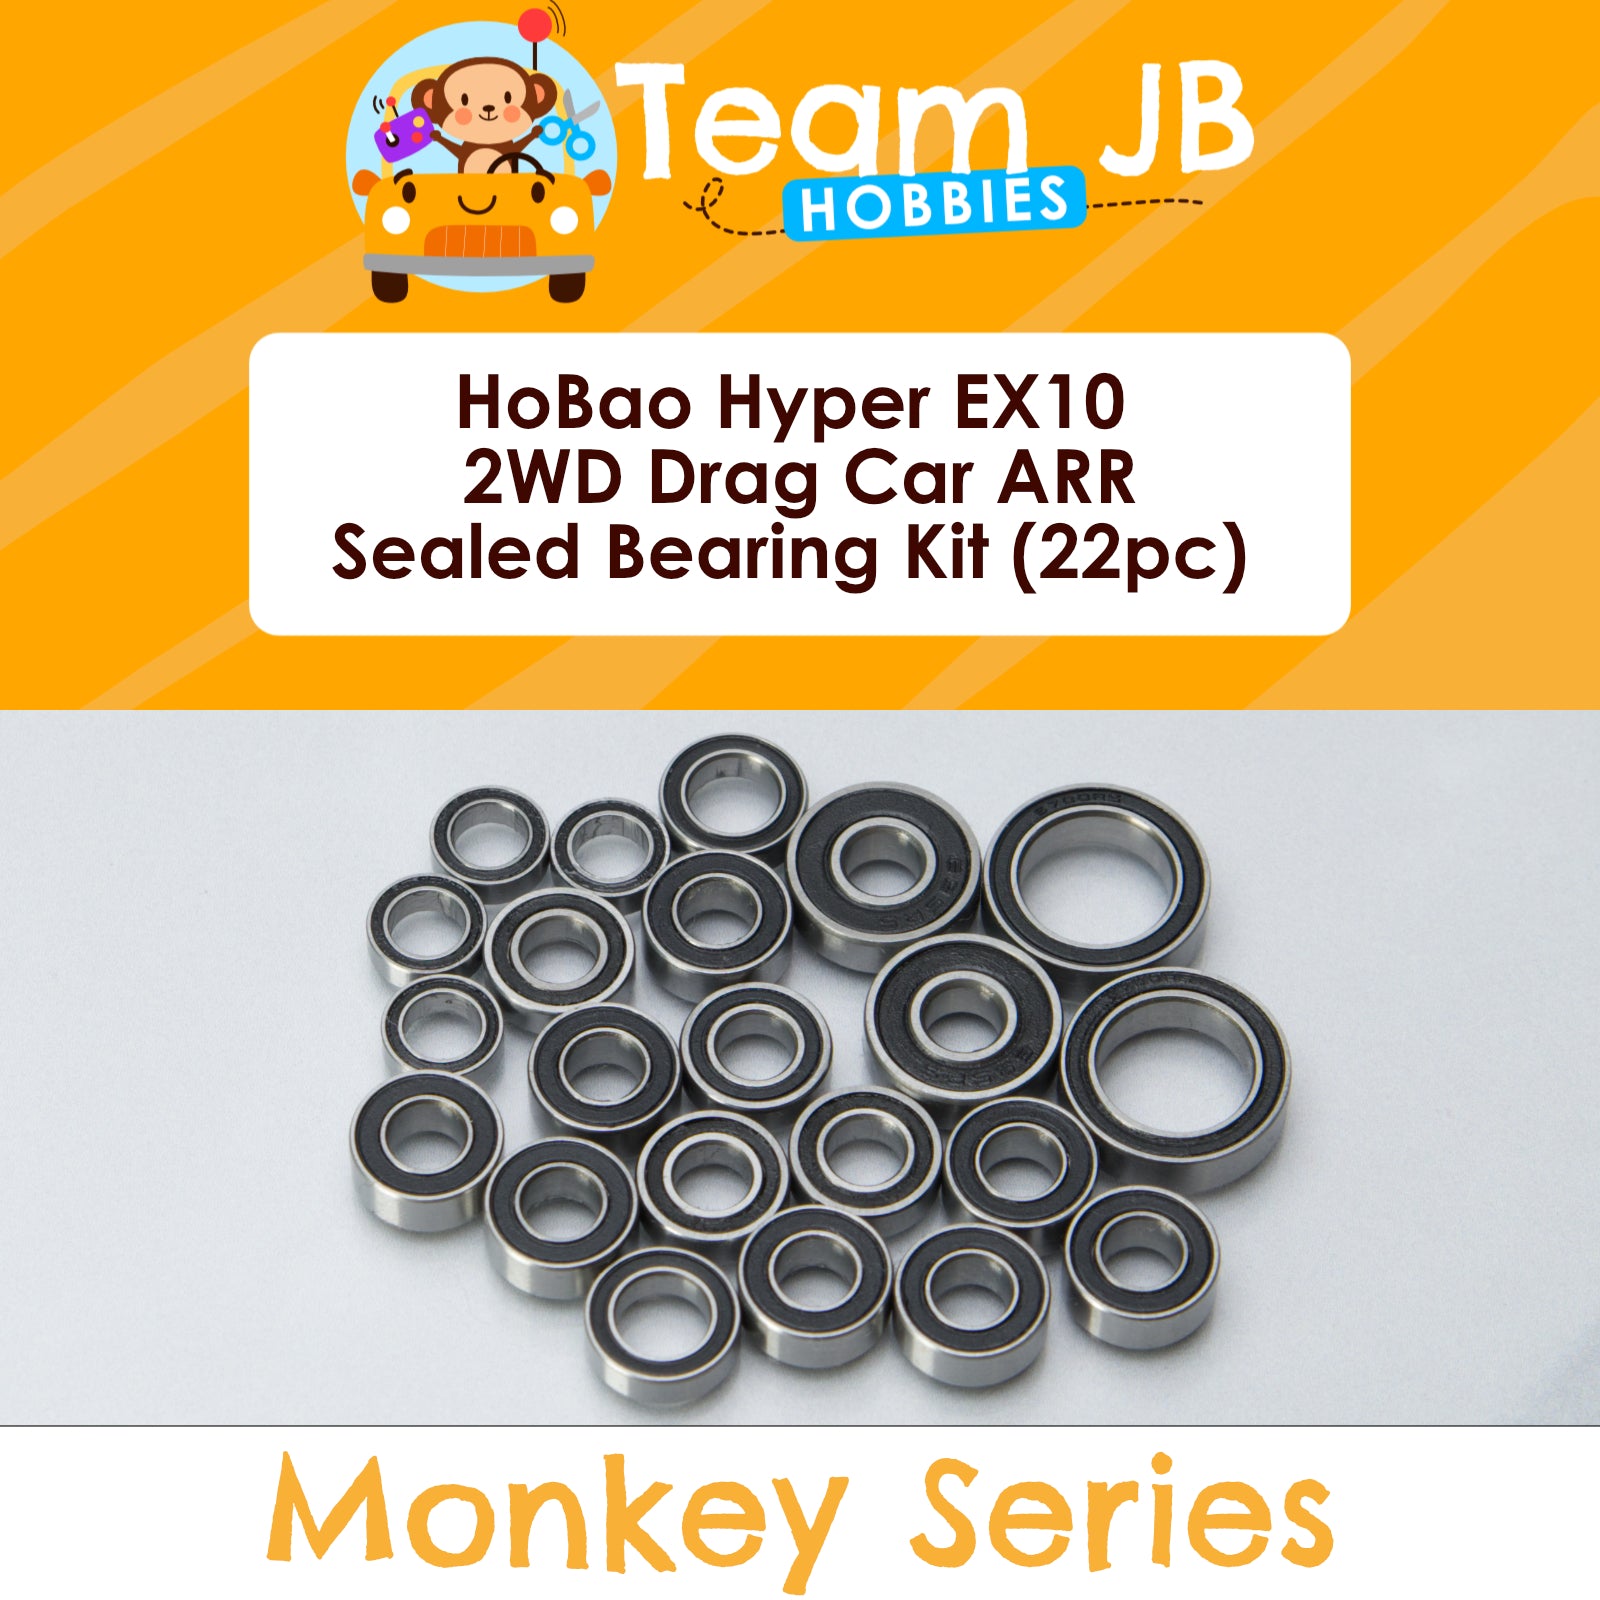 HoBao Hyper EX10 2WD Drag Car ARR - Sealed Bearing Kit